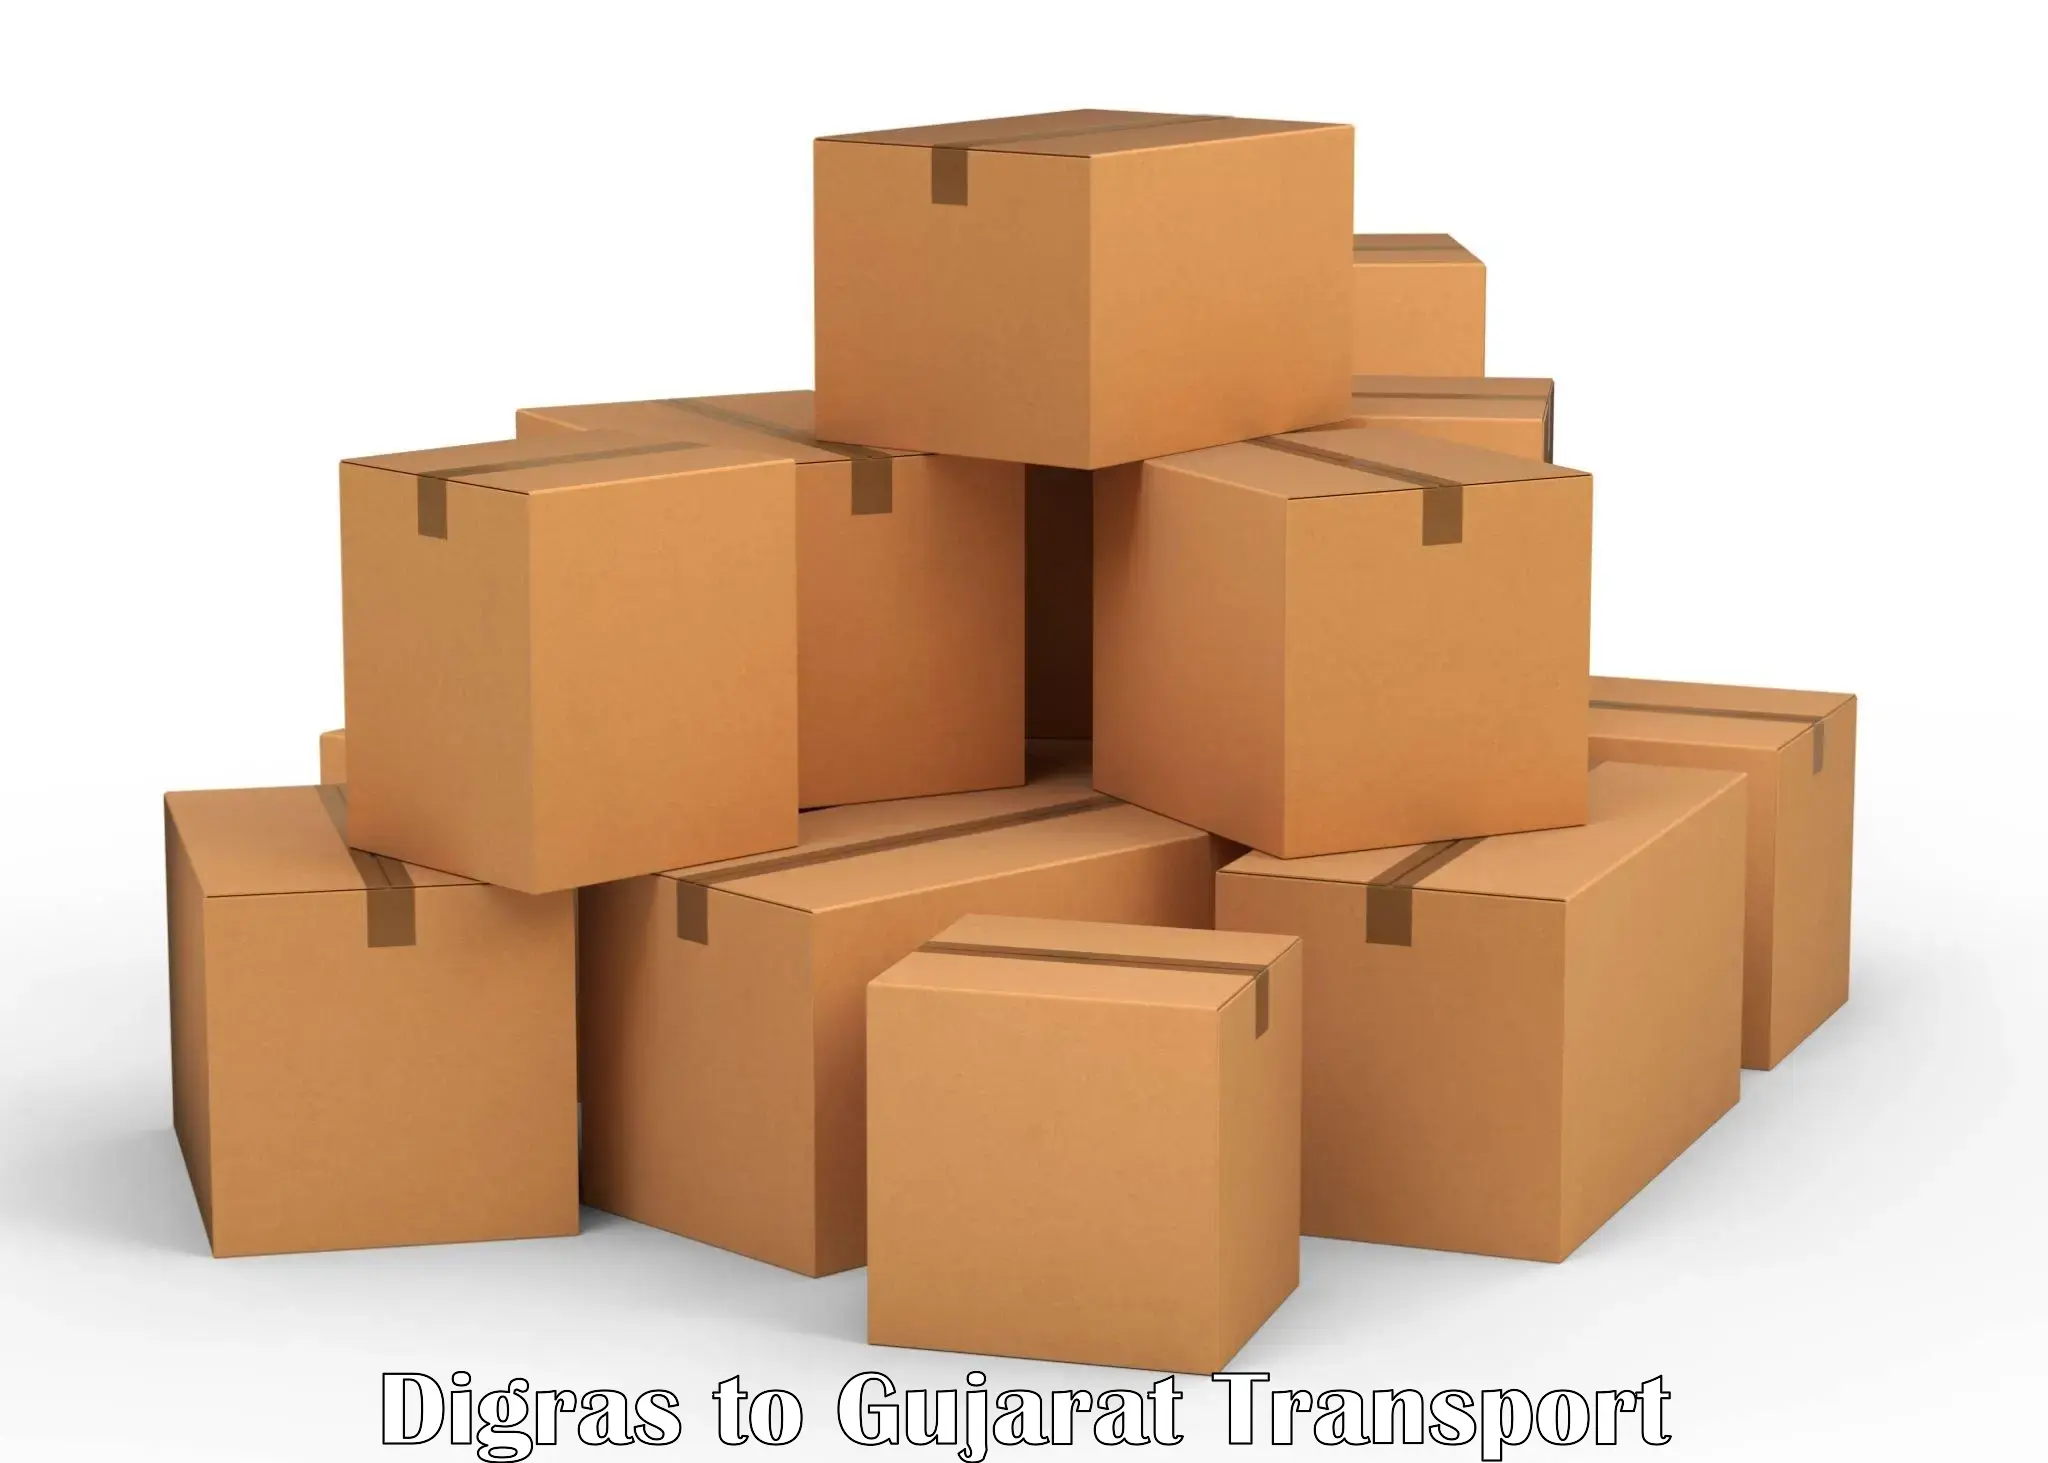 India truck logistics services Digras to Talaja